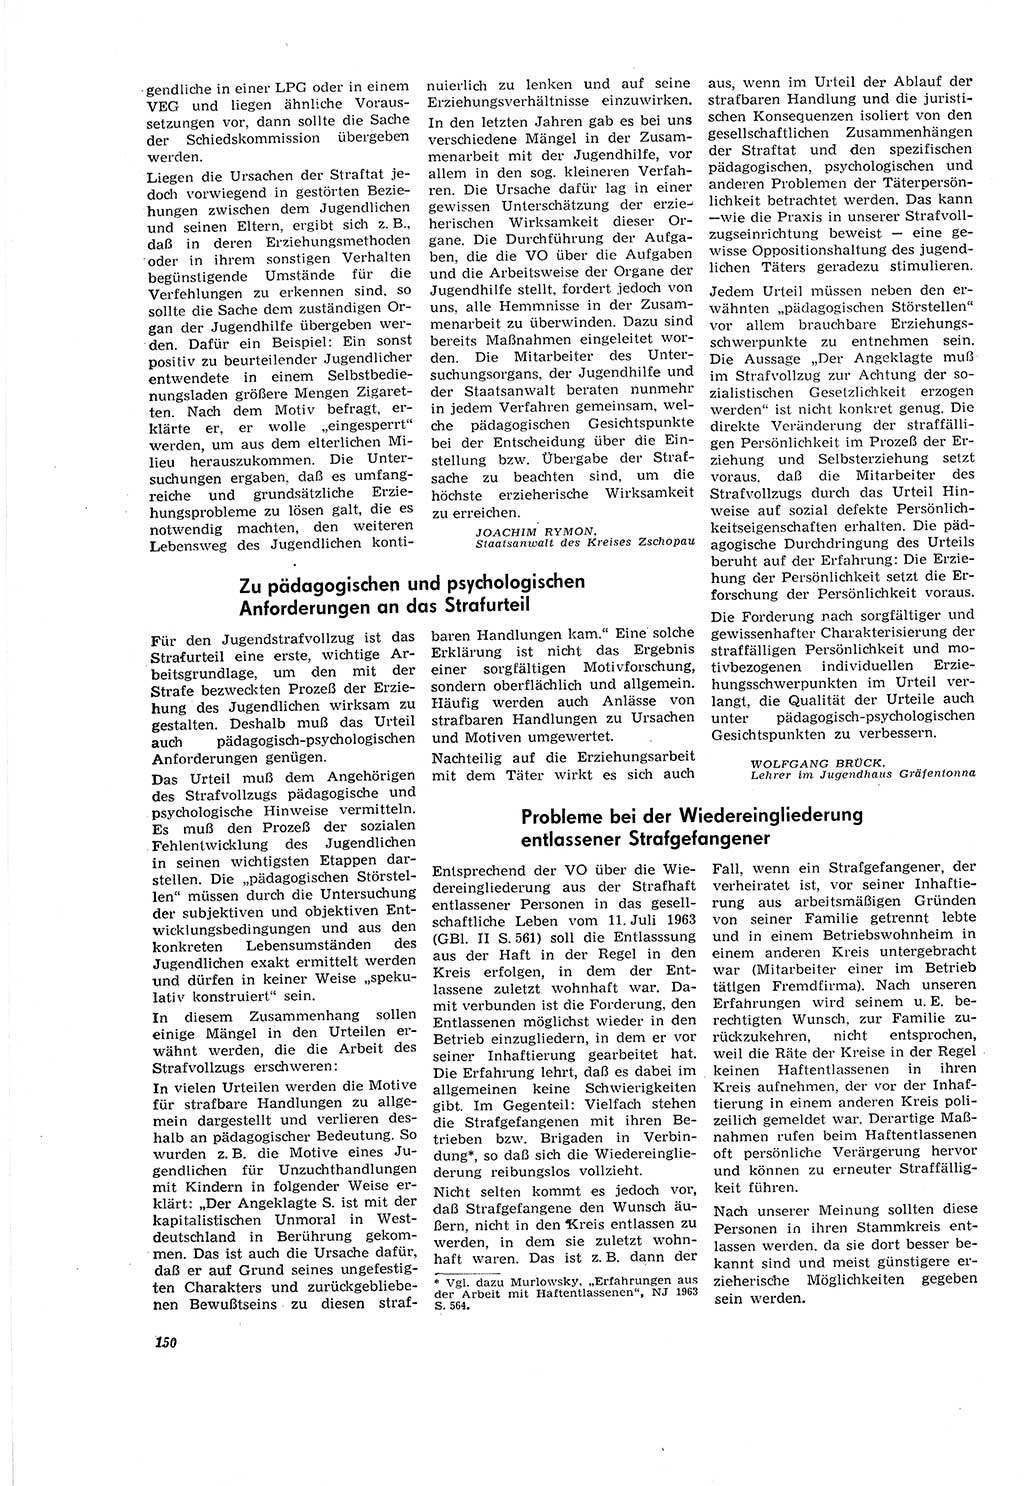 Neue Justiz (NJ), Zeitschrift für Recht und Rechtswissenschaft [Deutsche Demokratische Republik (DDR)], 20. Jahrgang 1966, Seite 150 (NJ DDR 1966, S. 150)